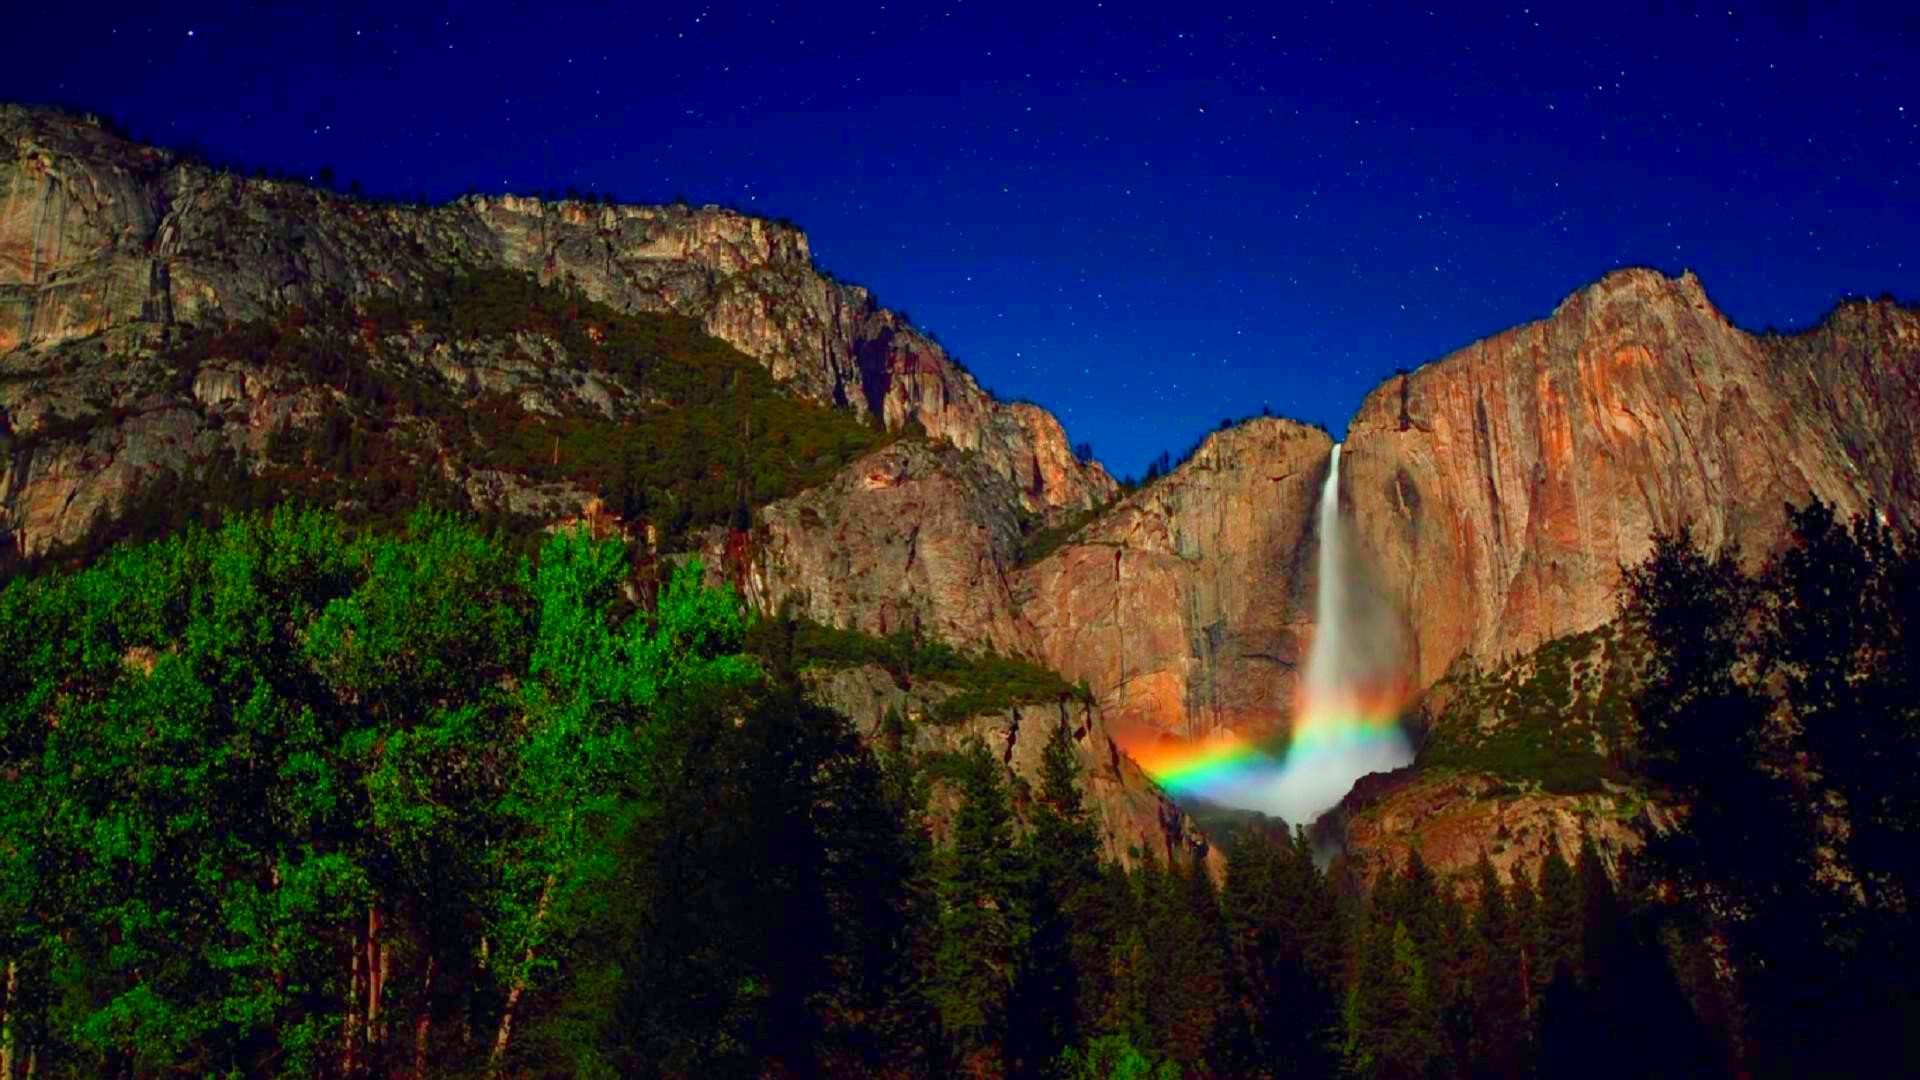 1920x1080 Yosemite-at-starry-night-pictutes-images Â· Yosemite-Night-Wallpaper-Desktop